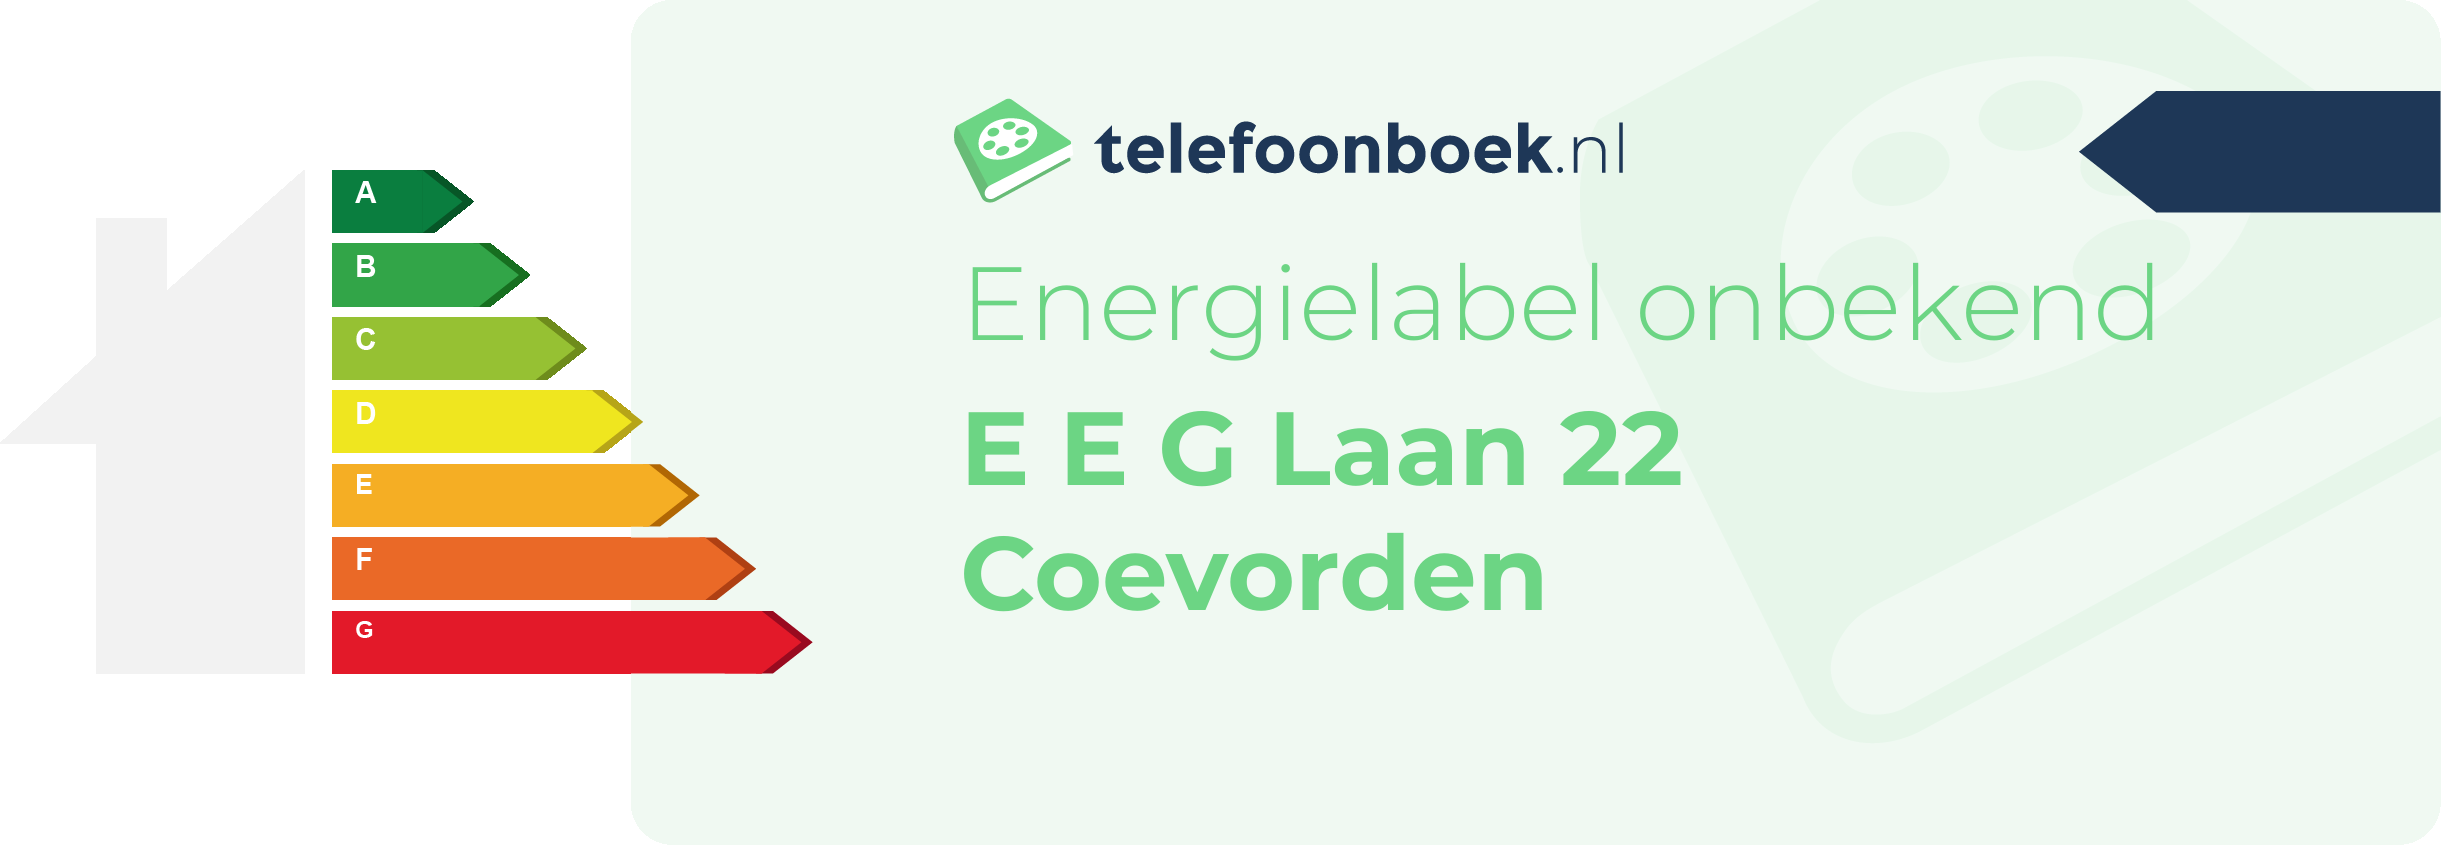 Energielabel E E G Laan 22 Coevorden